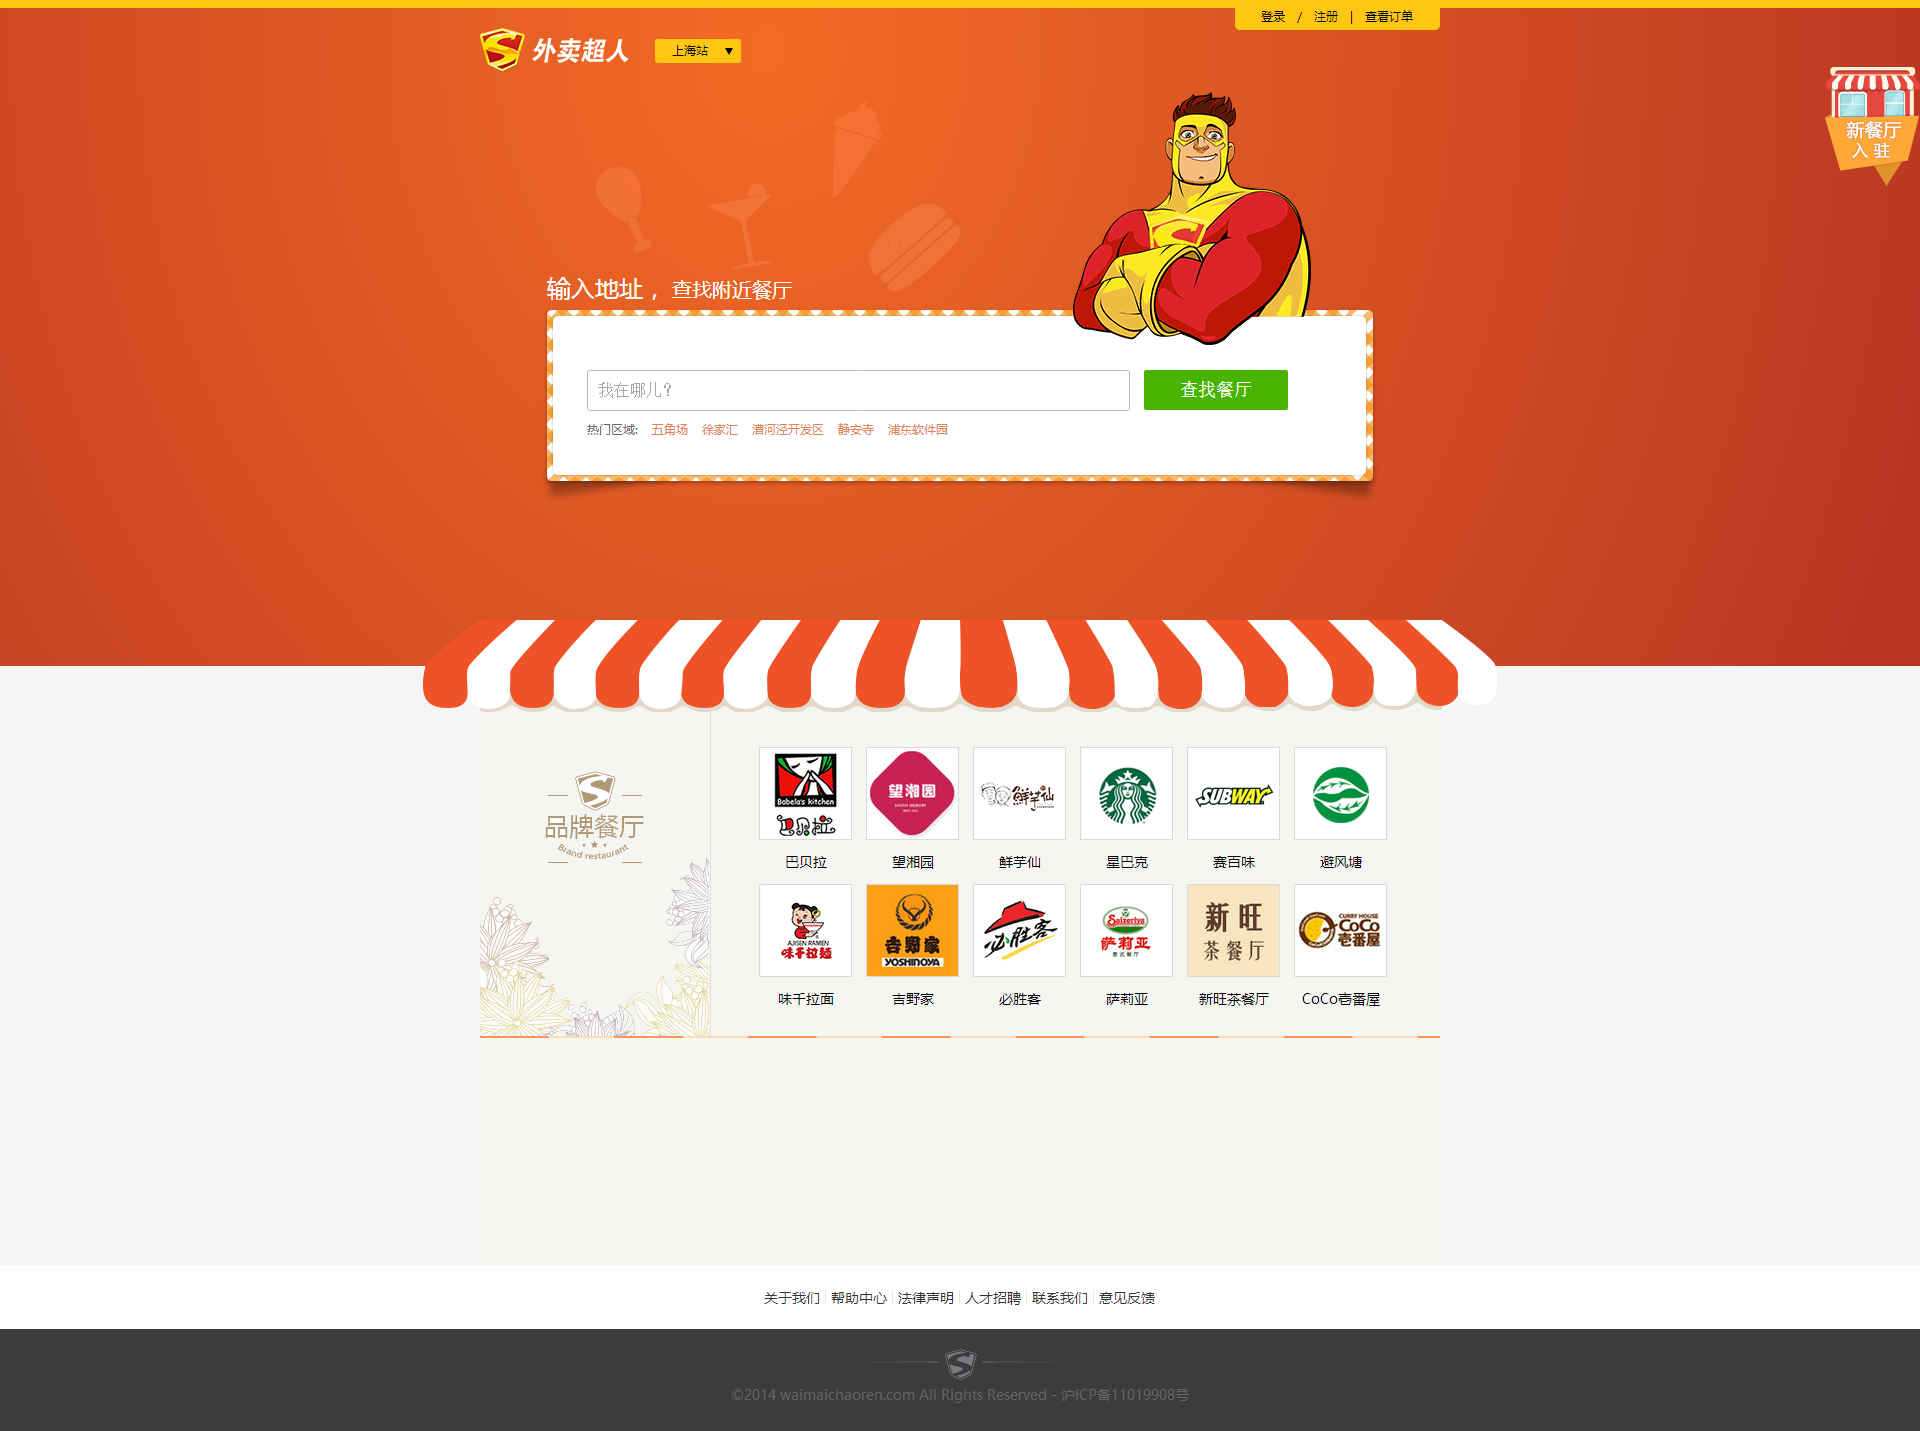 外卖超人餐饮网站用户中心模板html全套下载